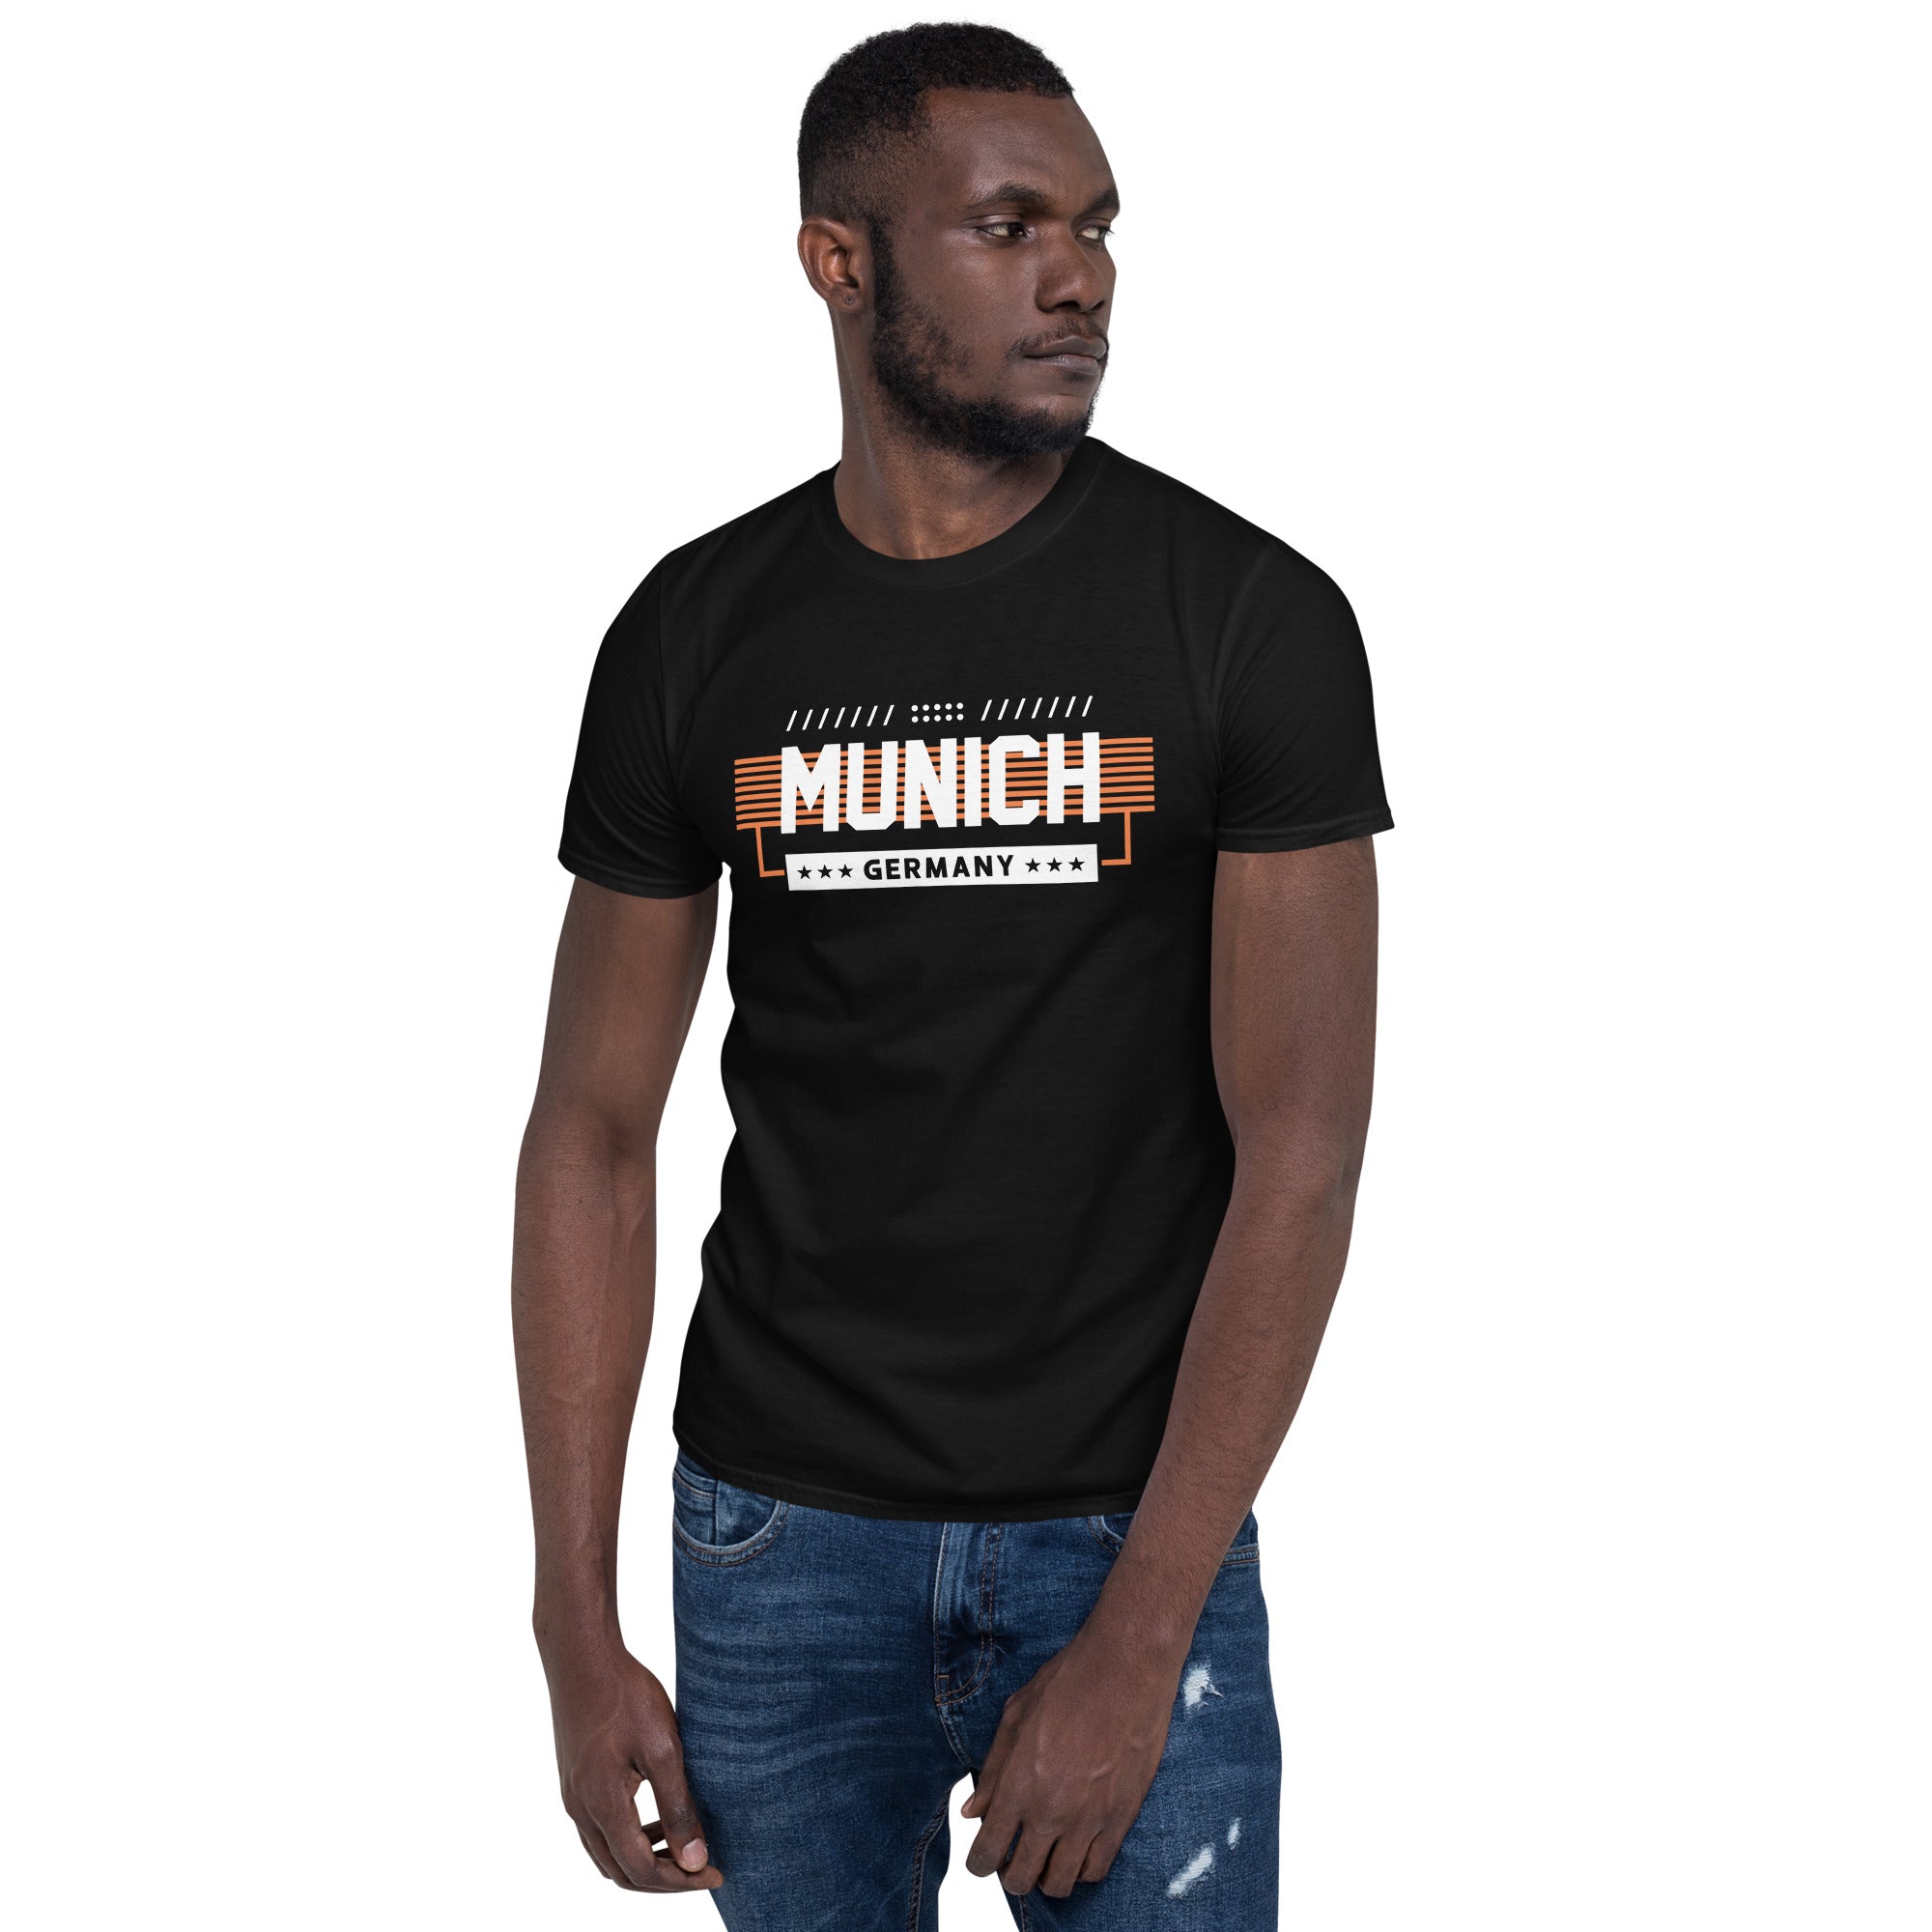 Munich - Short-Sleeve Unisex T-Shirt